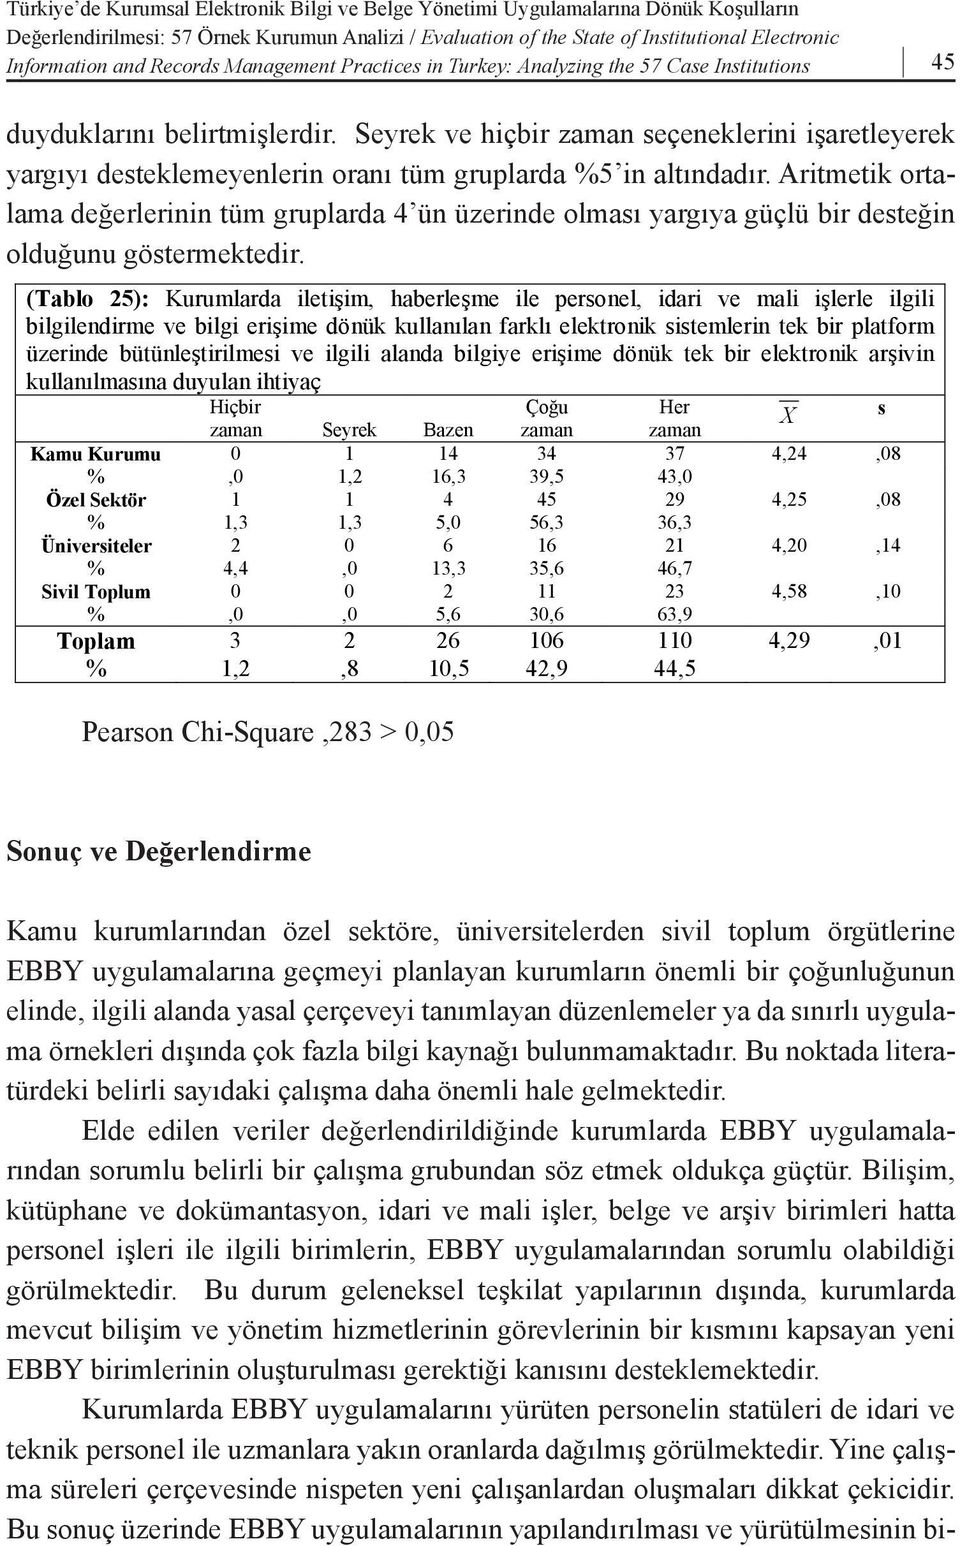 tamamına in Turkey: yakını Analyzing kurumsal the 57 içerik Case Institutions yönetimi kapsamında 45 değerlendirilen bütünleşik bilgi sistemlerine yoğun olarak ihtiyaç duyduklarını belirtmişlerdir.